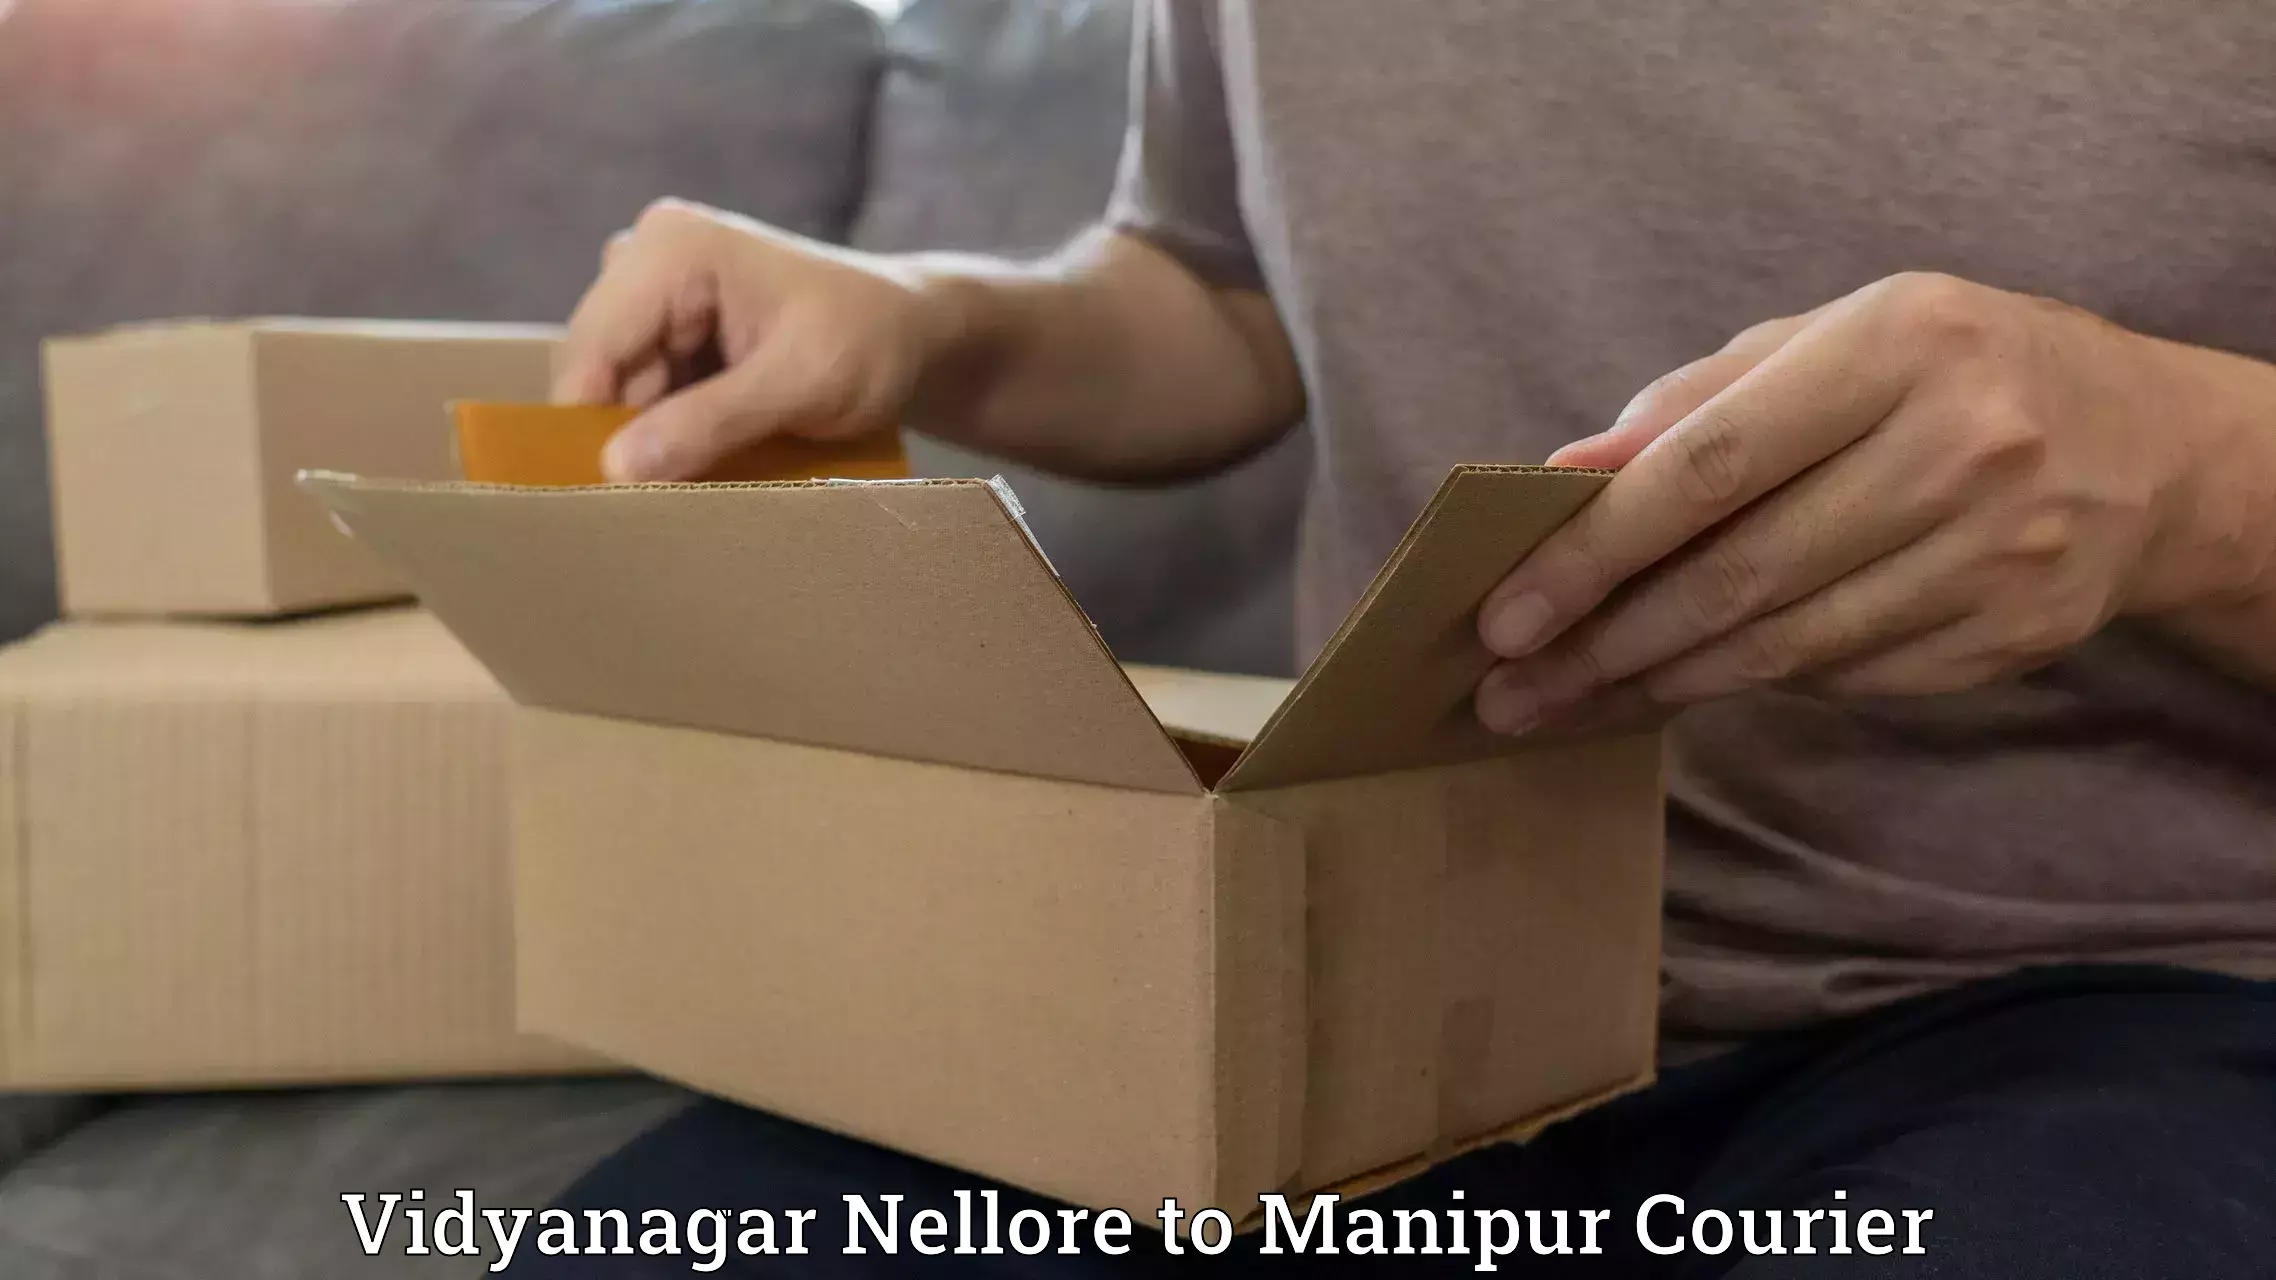 Bulk courier orders Vidyanagar Nellore to Senapati